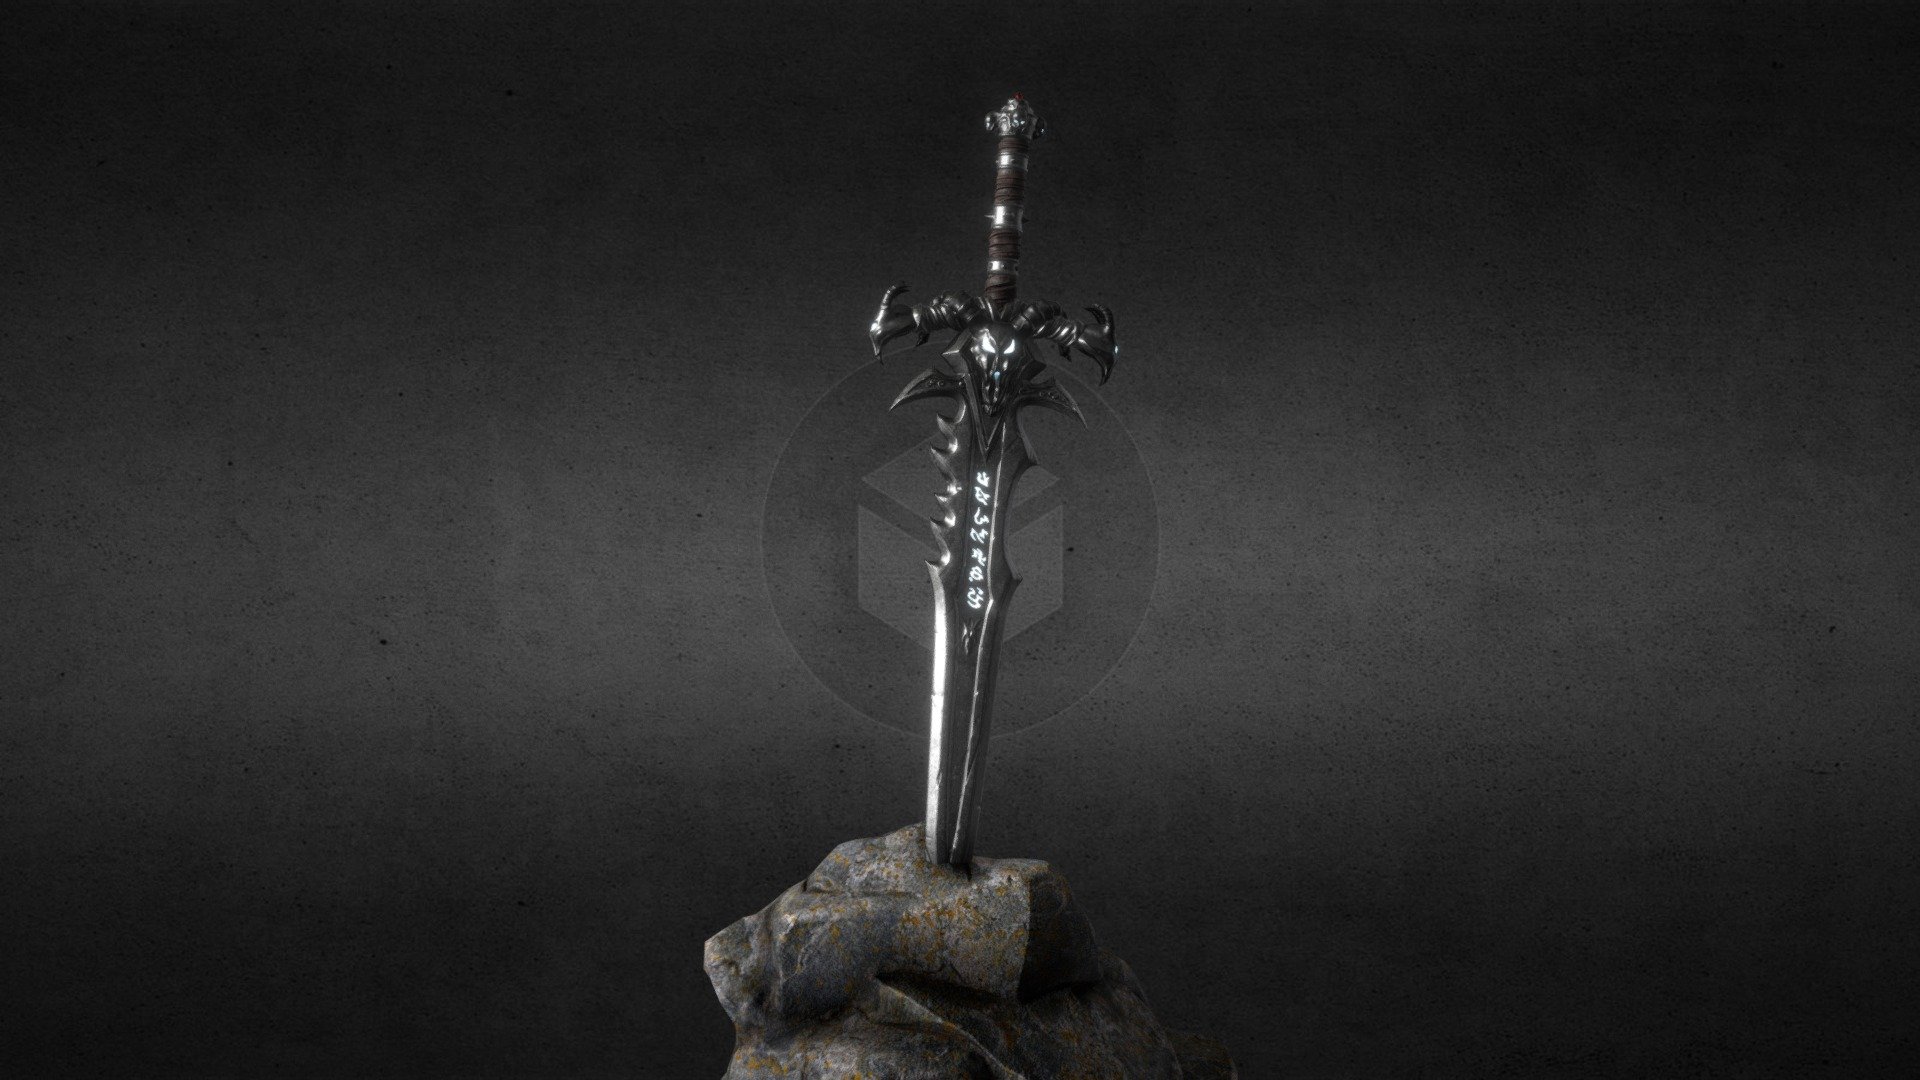 Frostmourne Sword